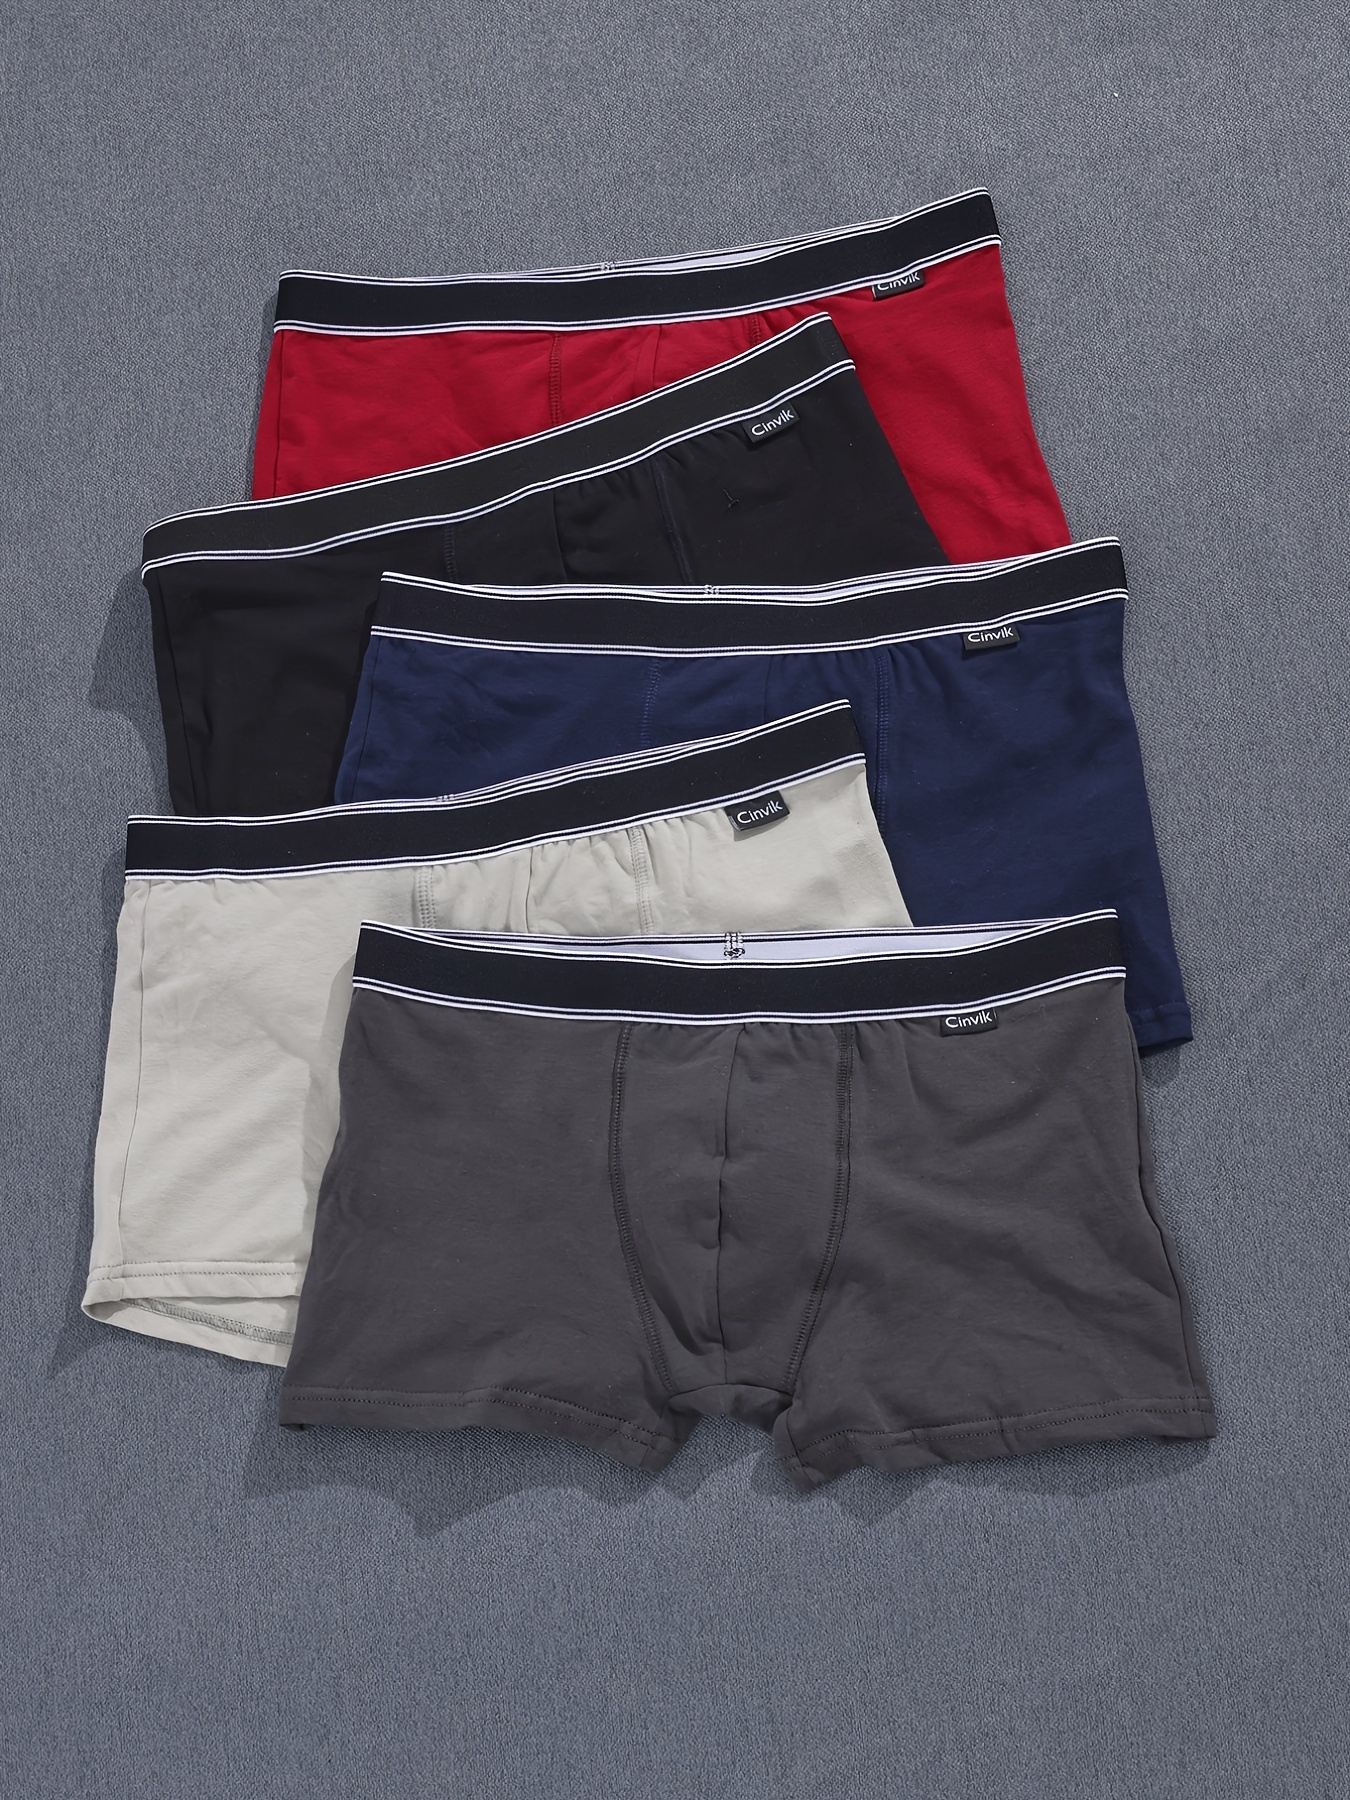 Men's Underwear Boxer Briefs Cool Moisture wicking Slightly - Temu